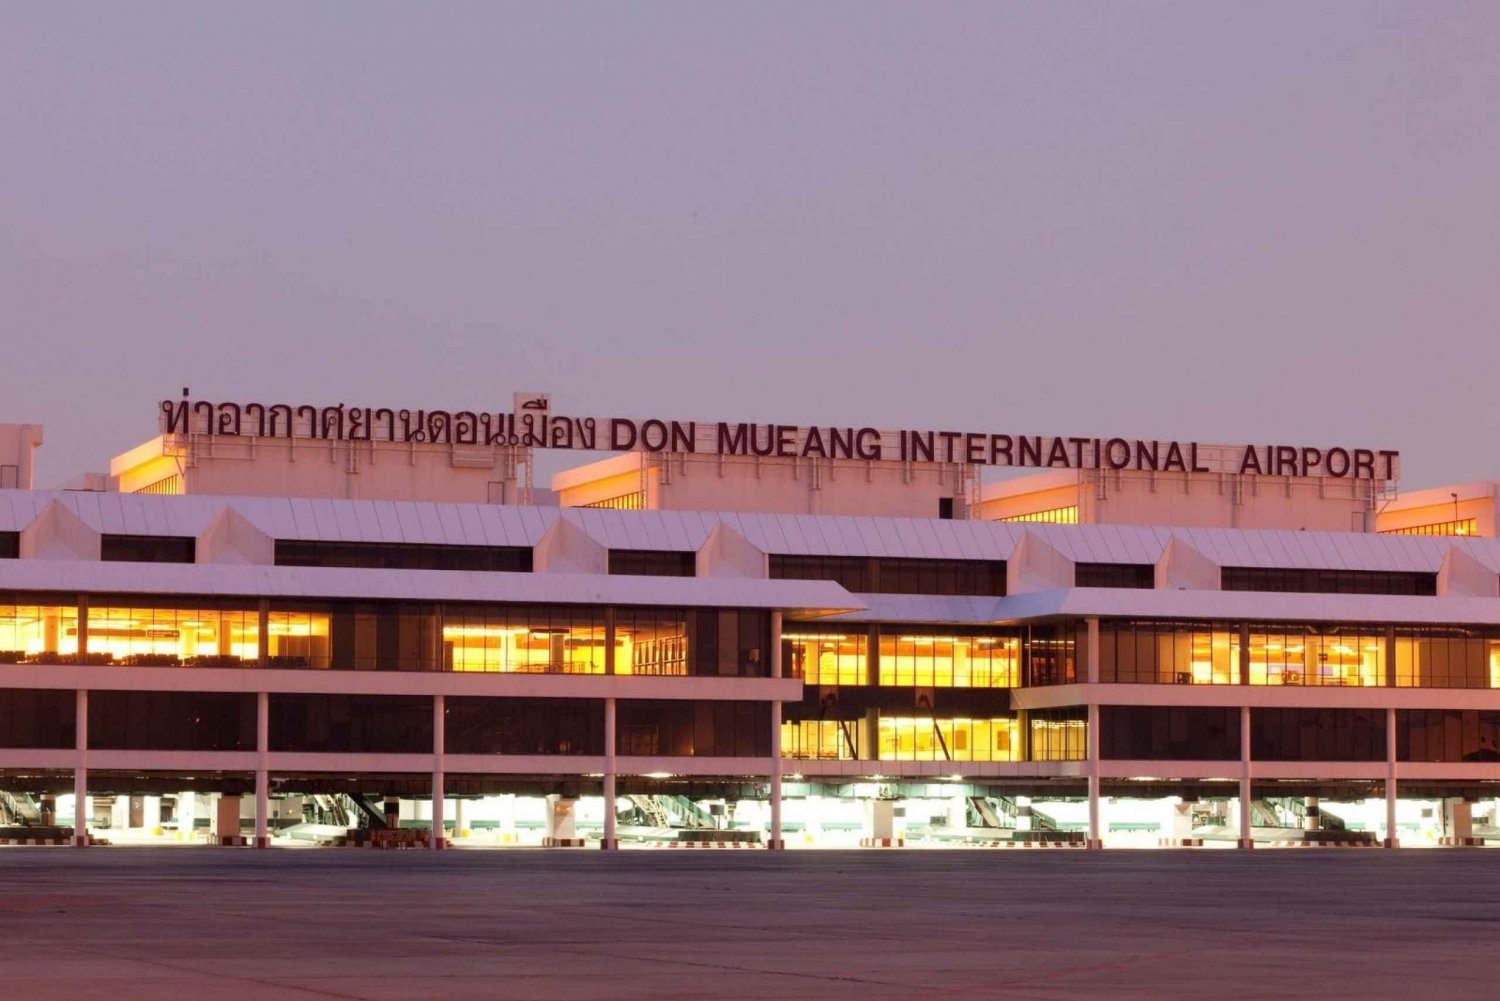 Traslado do aeroporto DMK para o hotel em Pattaya (particular)